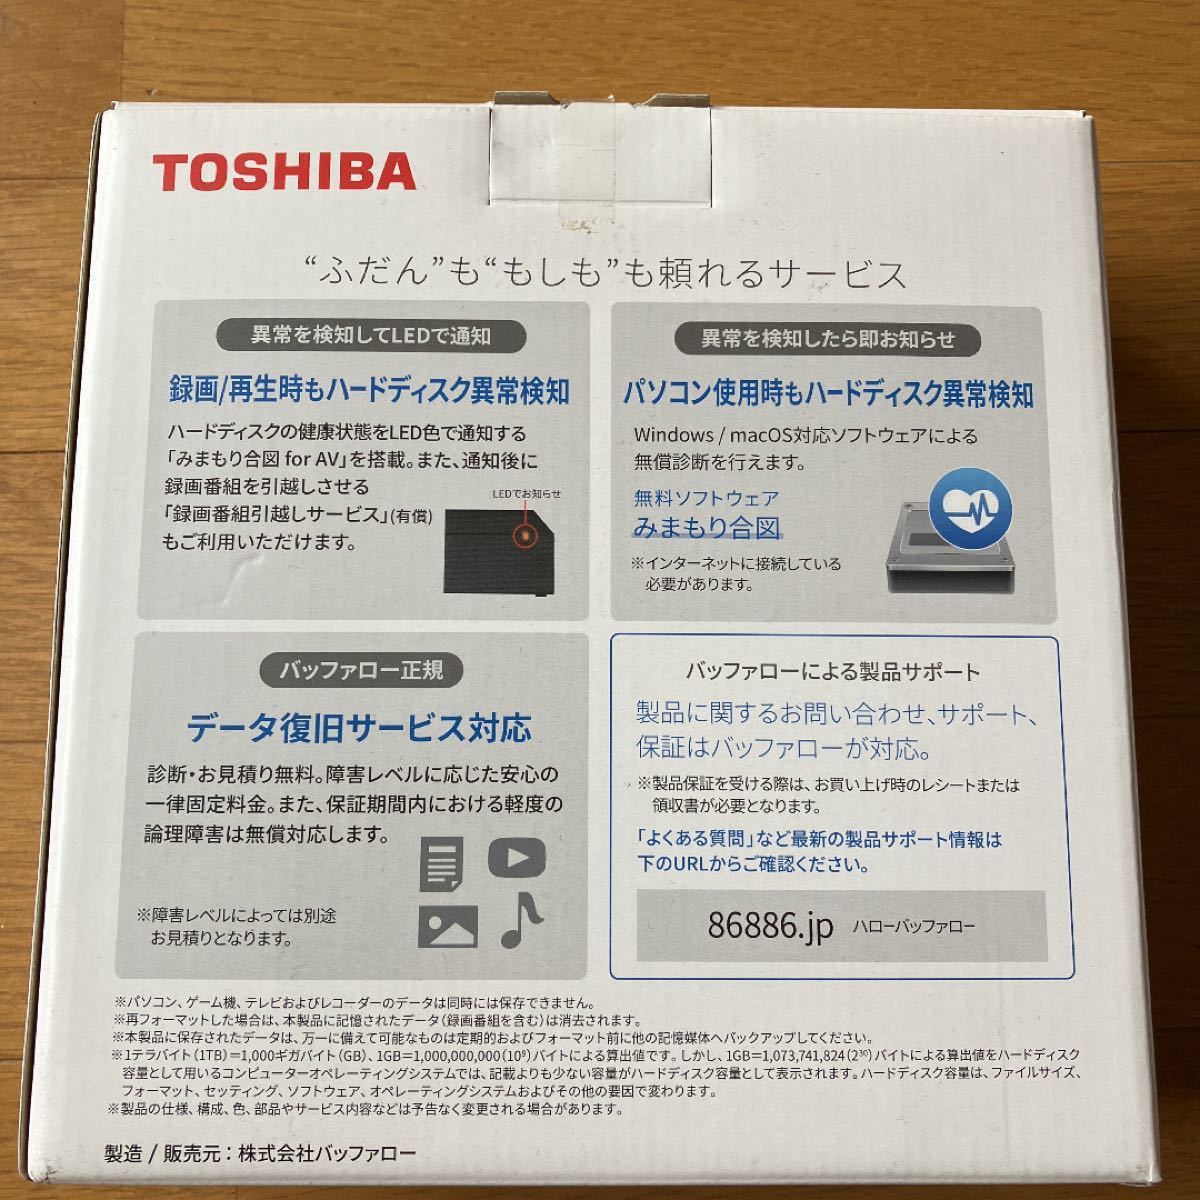 TOSHIBA 外付けハードディスク 2TB HD-TDA2U3-B/N